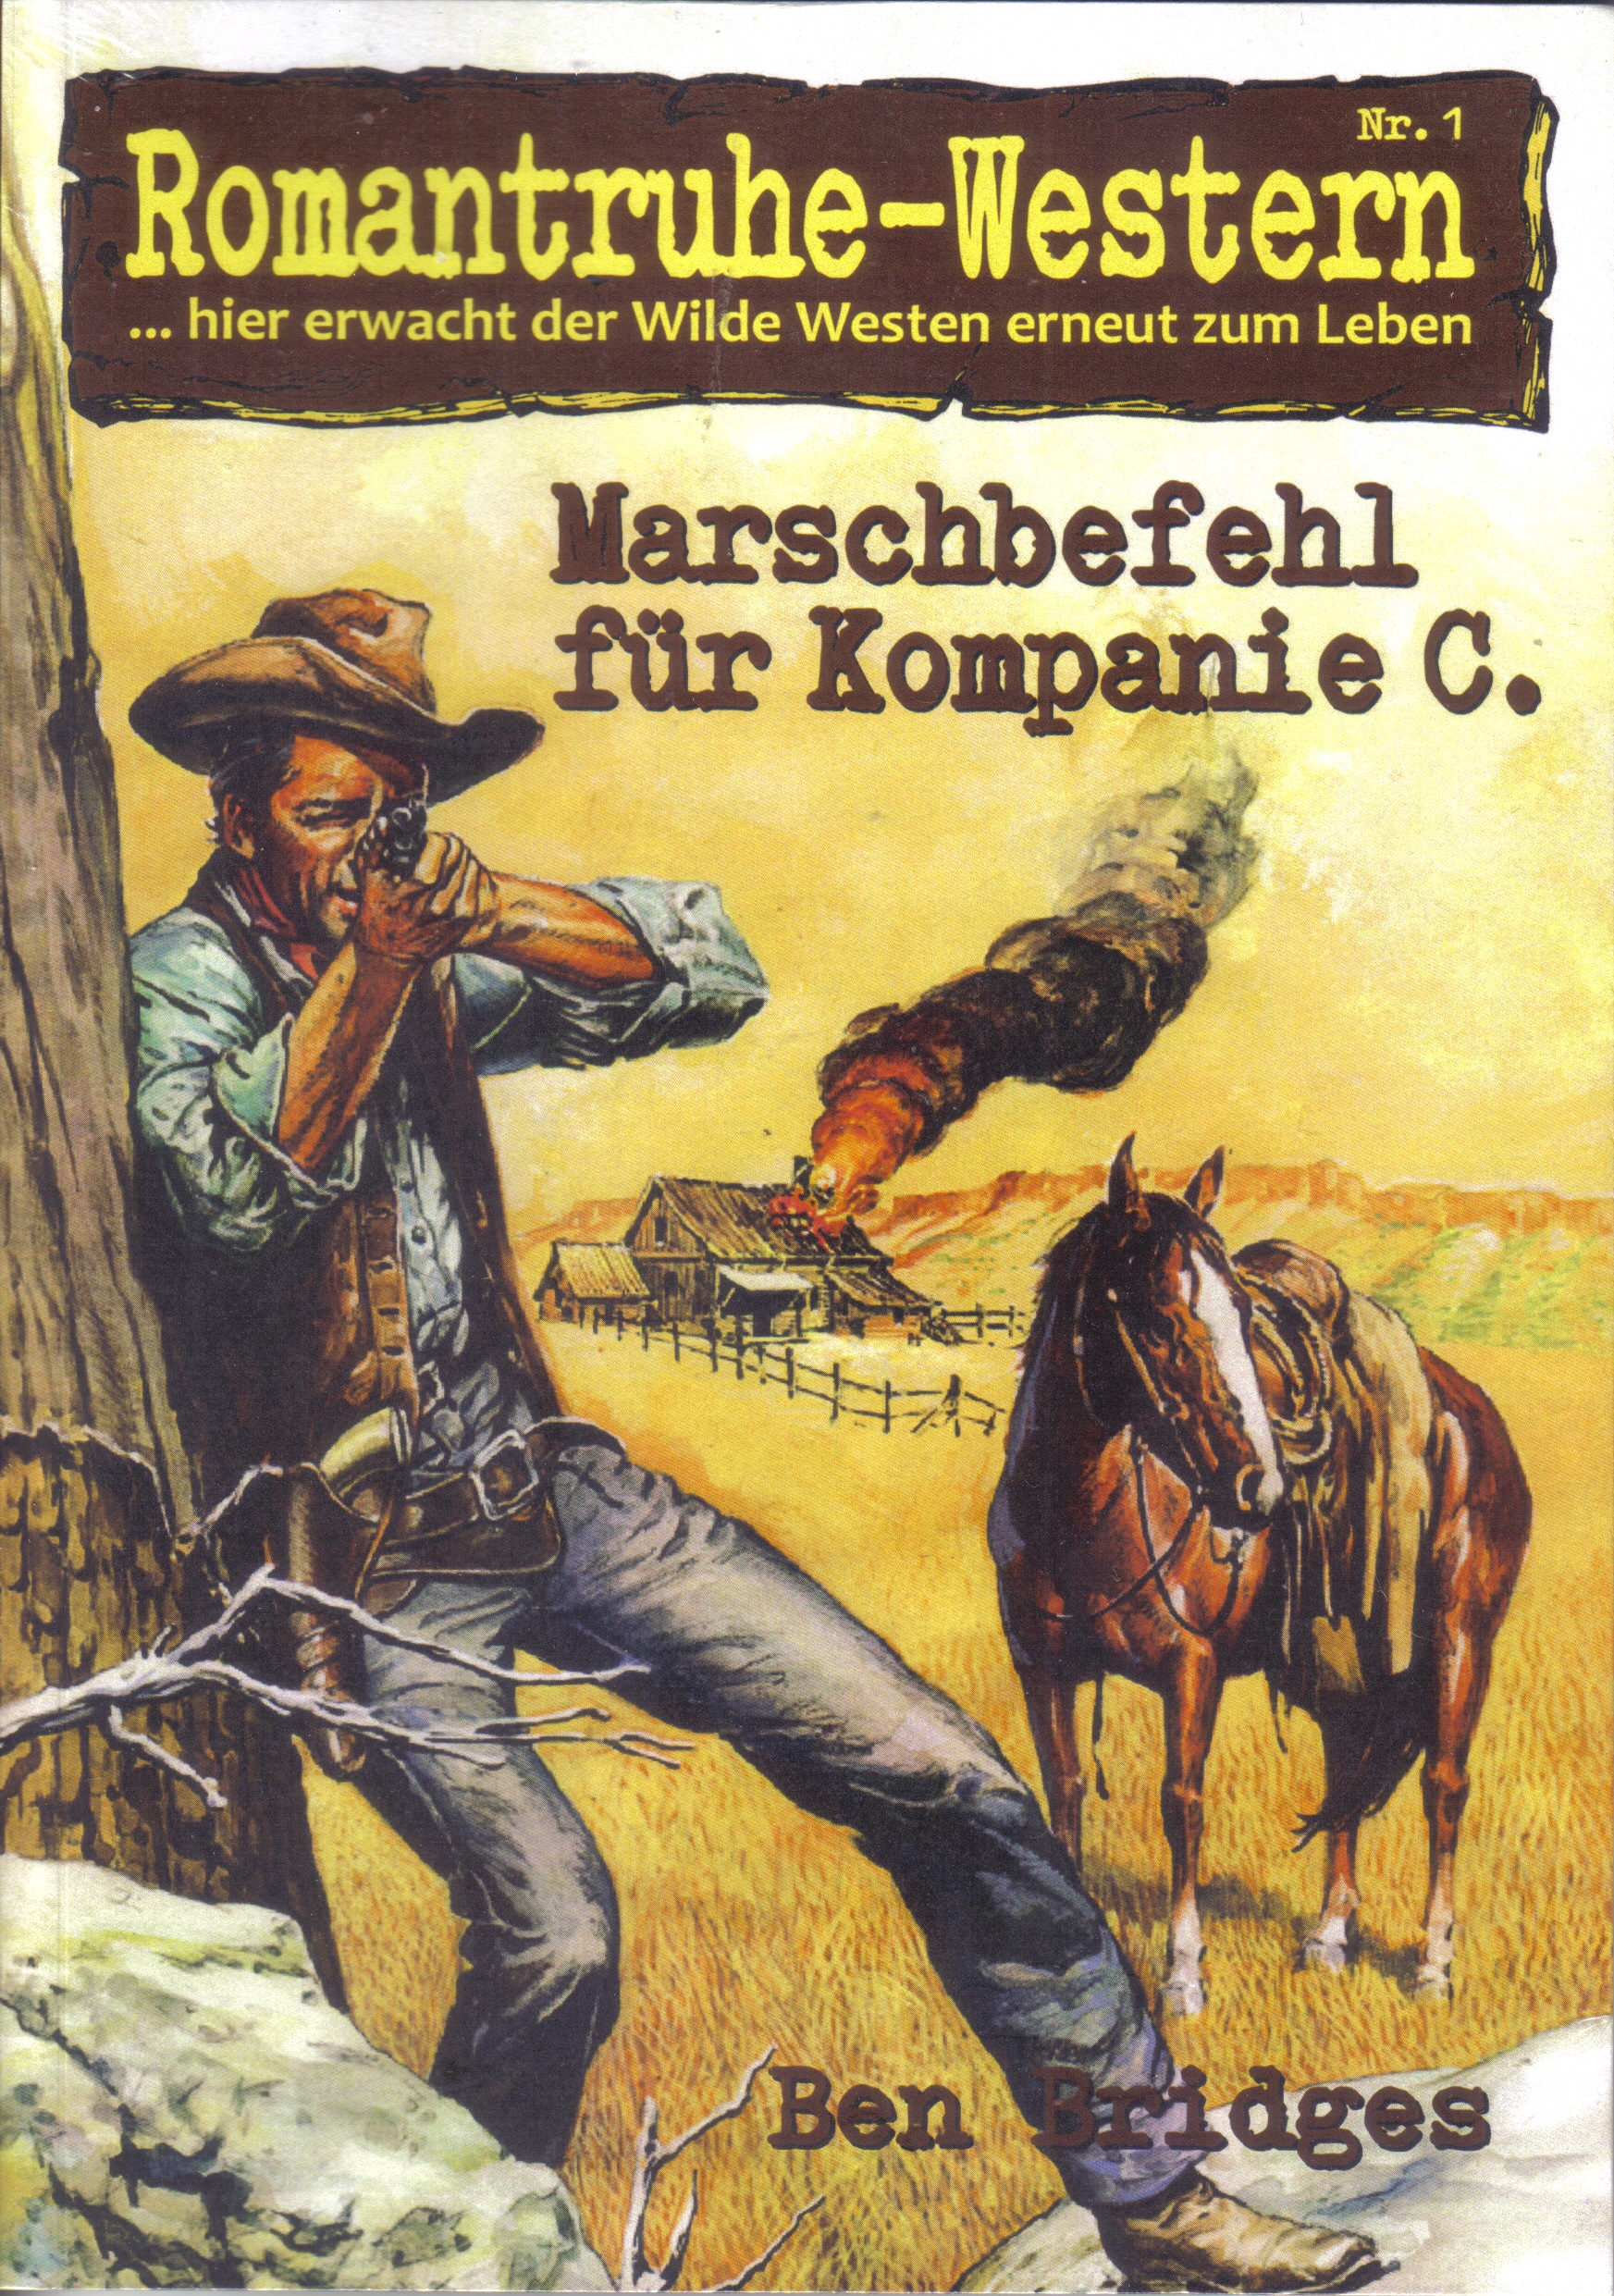 Marschbefehl fur Kompanie C by Ben Bridges